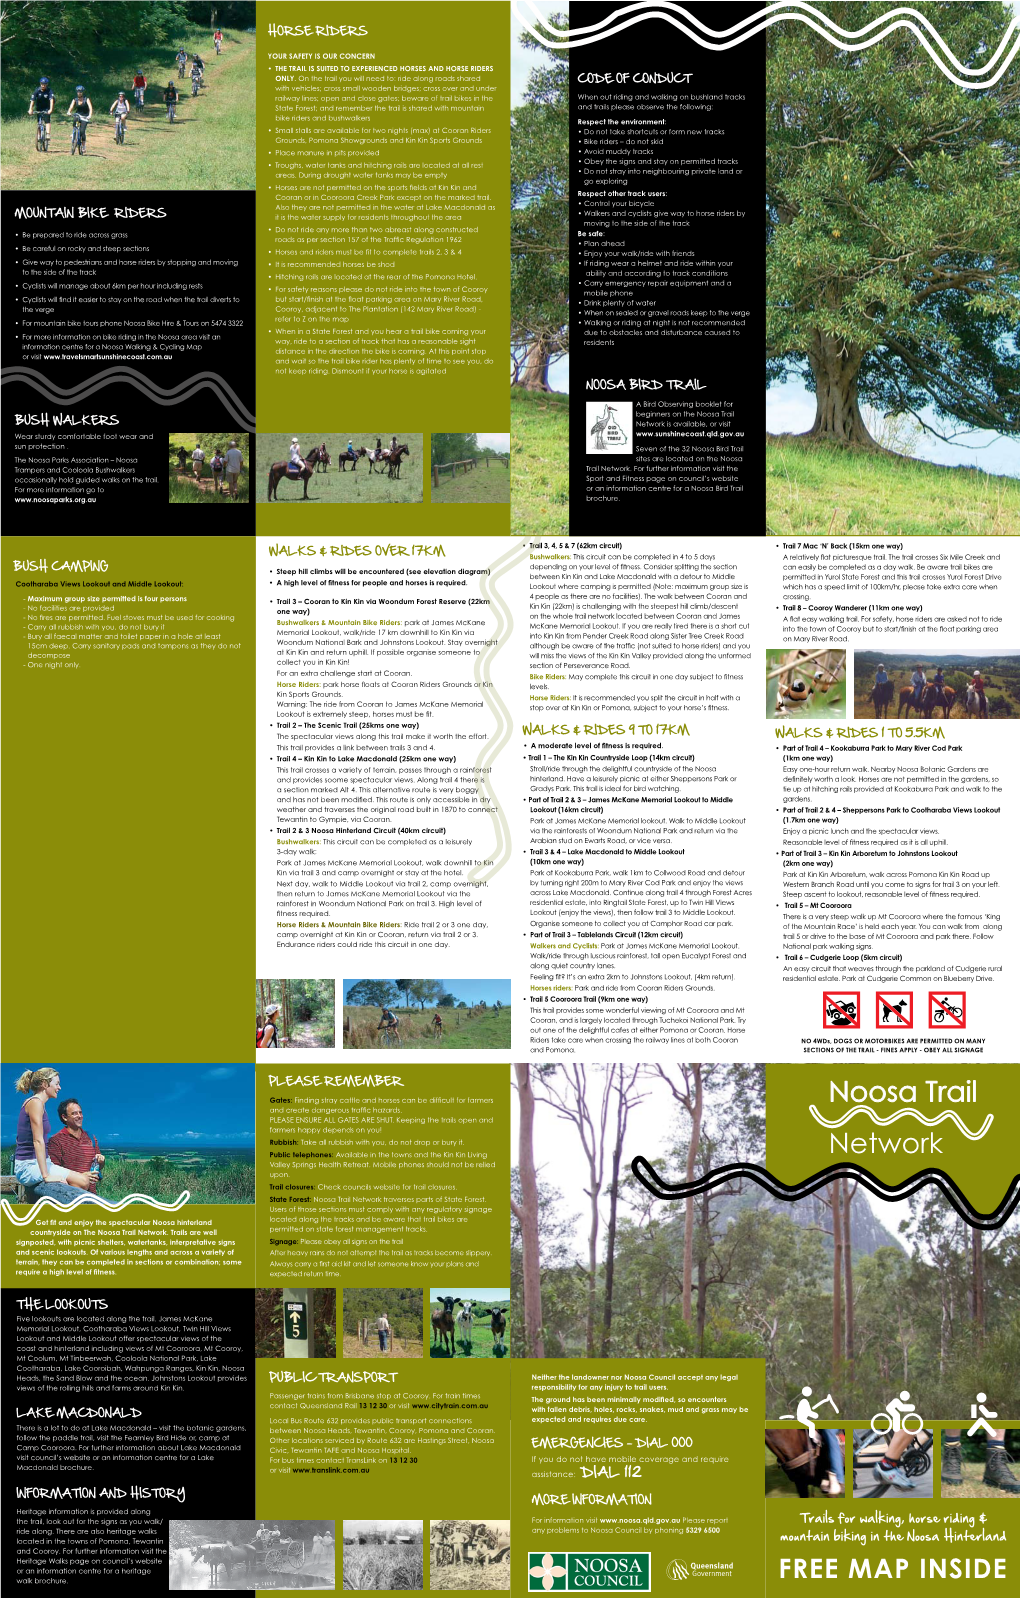 Noosa Trail Network Brochure